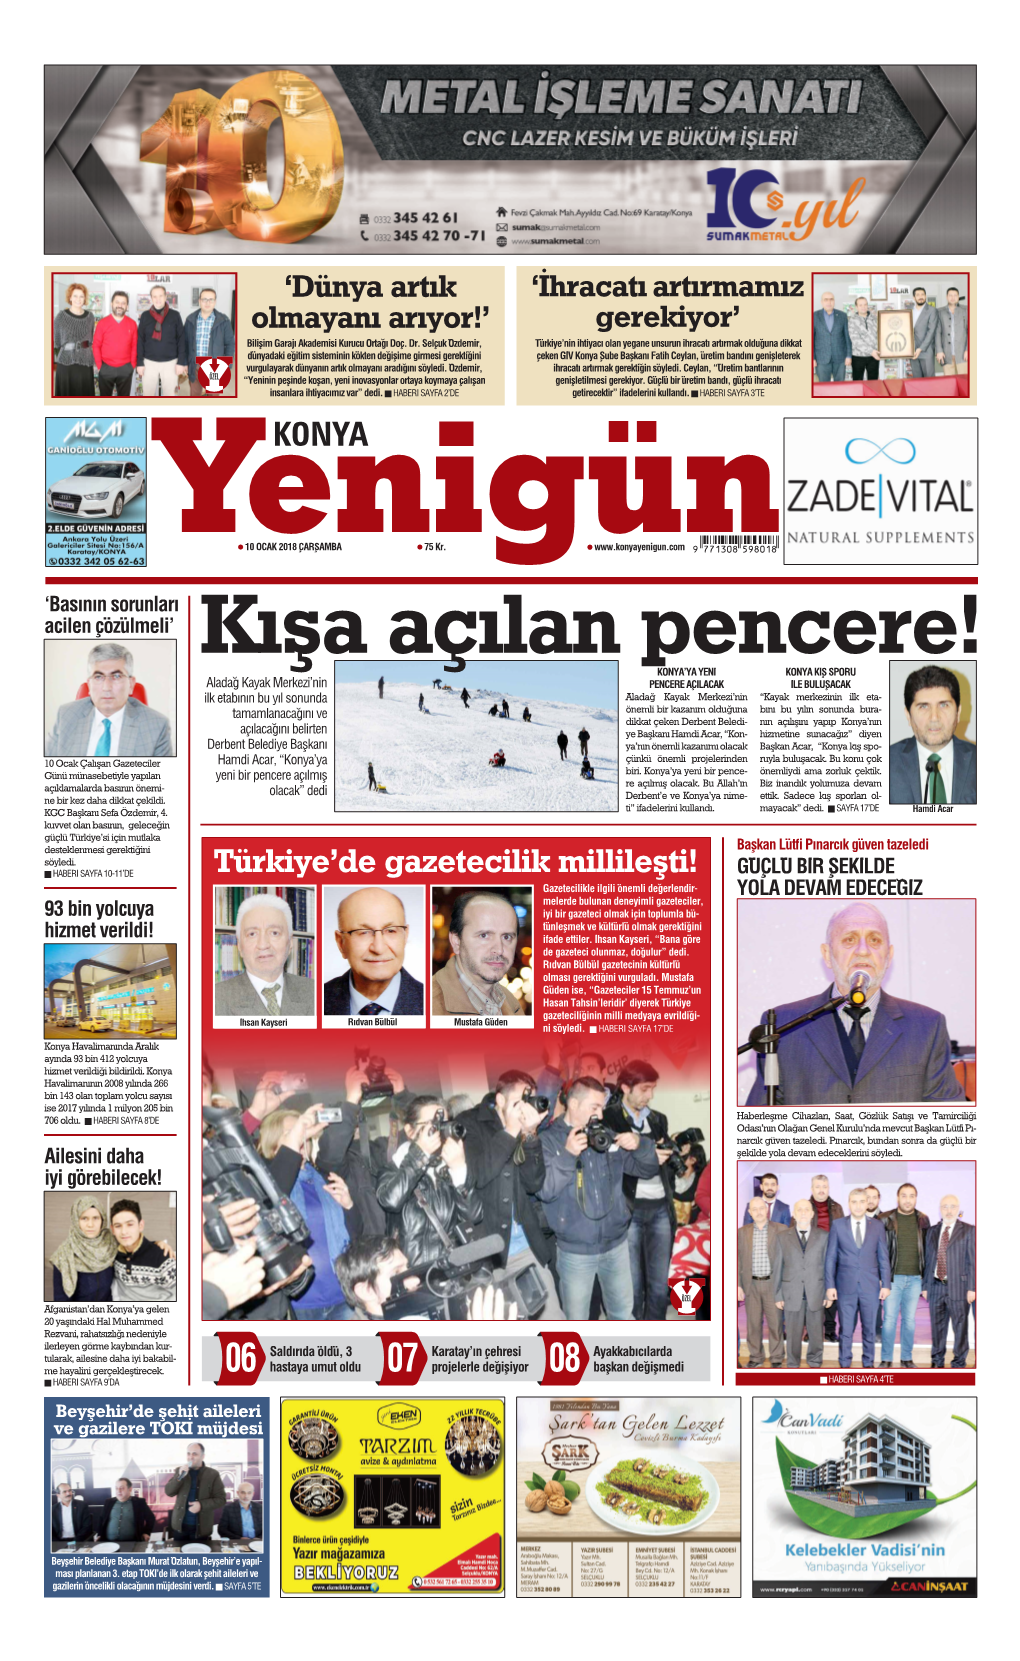 Türkiye'de Gazetecilik Millileşti!